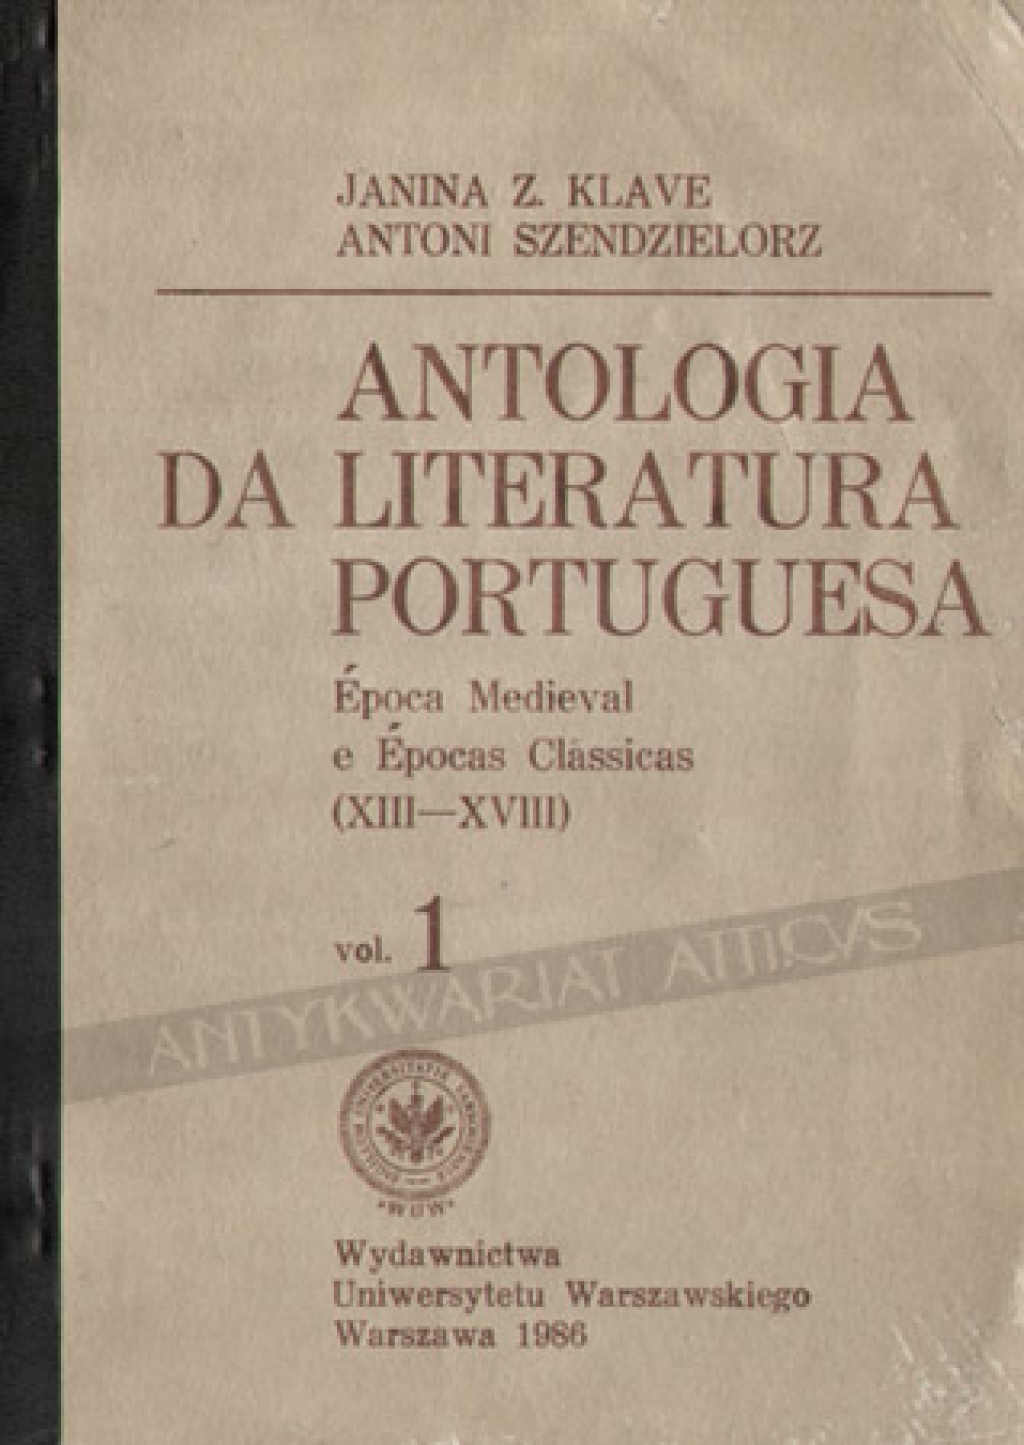 Antologia da literatura portuguesa. Epoca Medieval e Epocas Classicas (XIII - XVIII), vol. 1